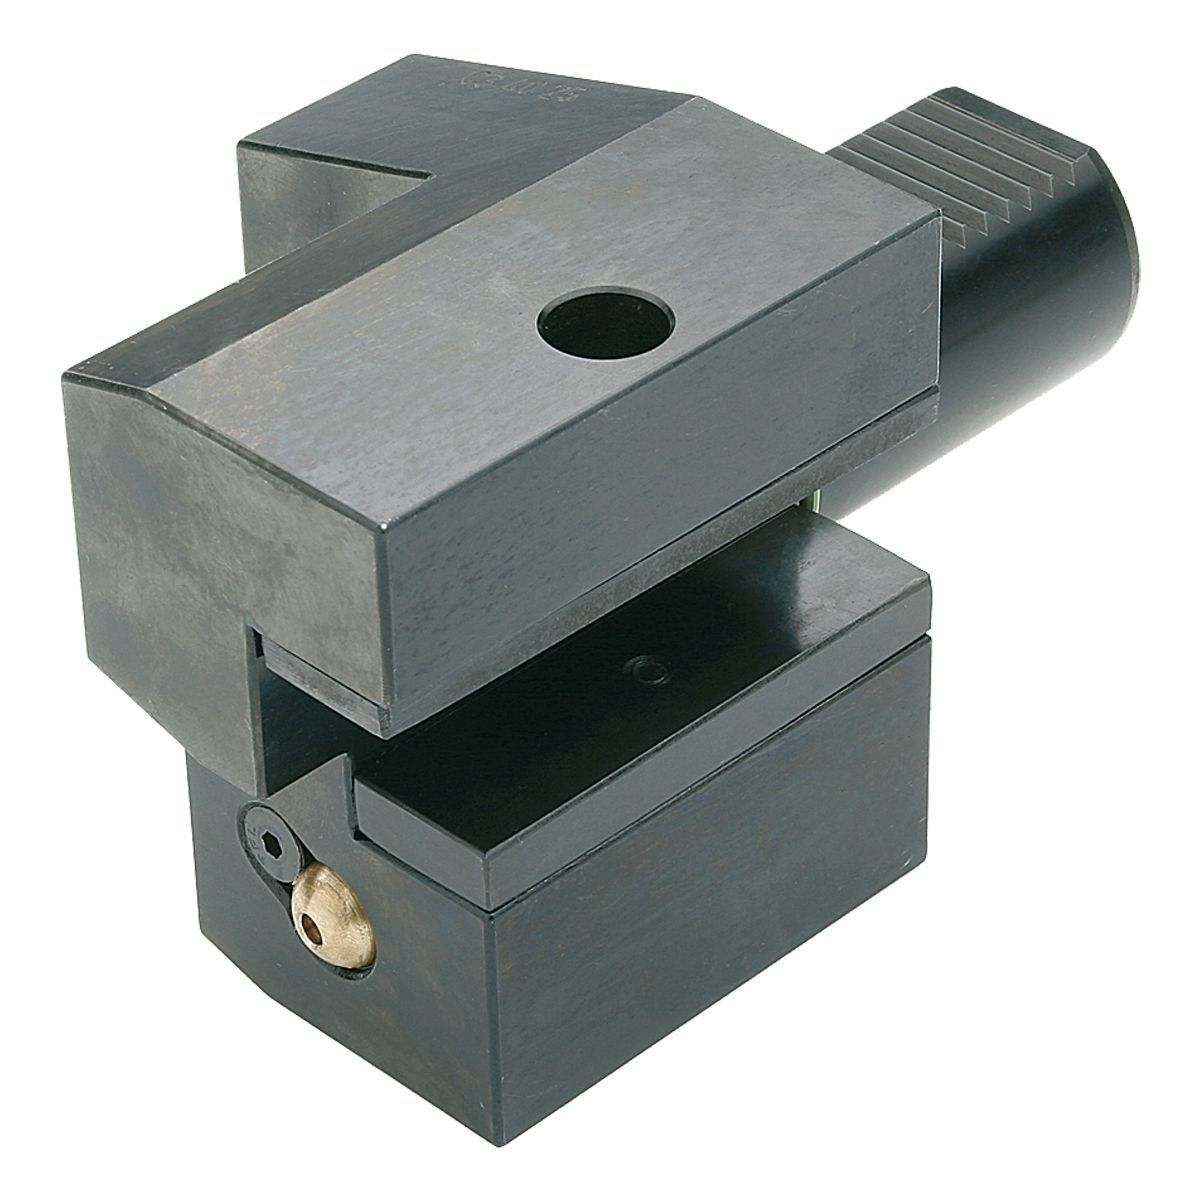 Axial-Werkzeughalter C3-40x25 DIN 69880 (ISO 10889)